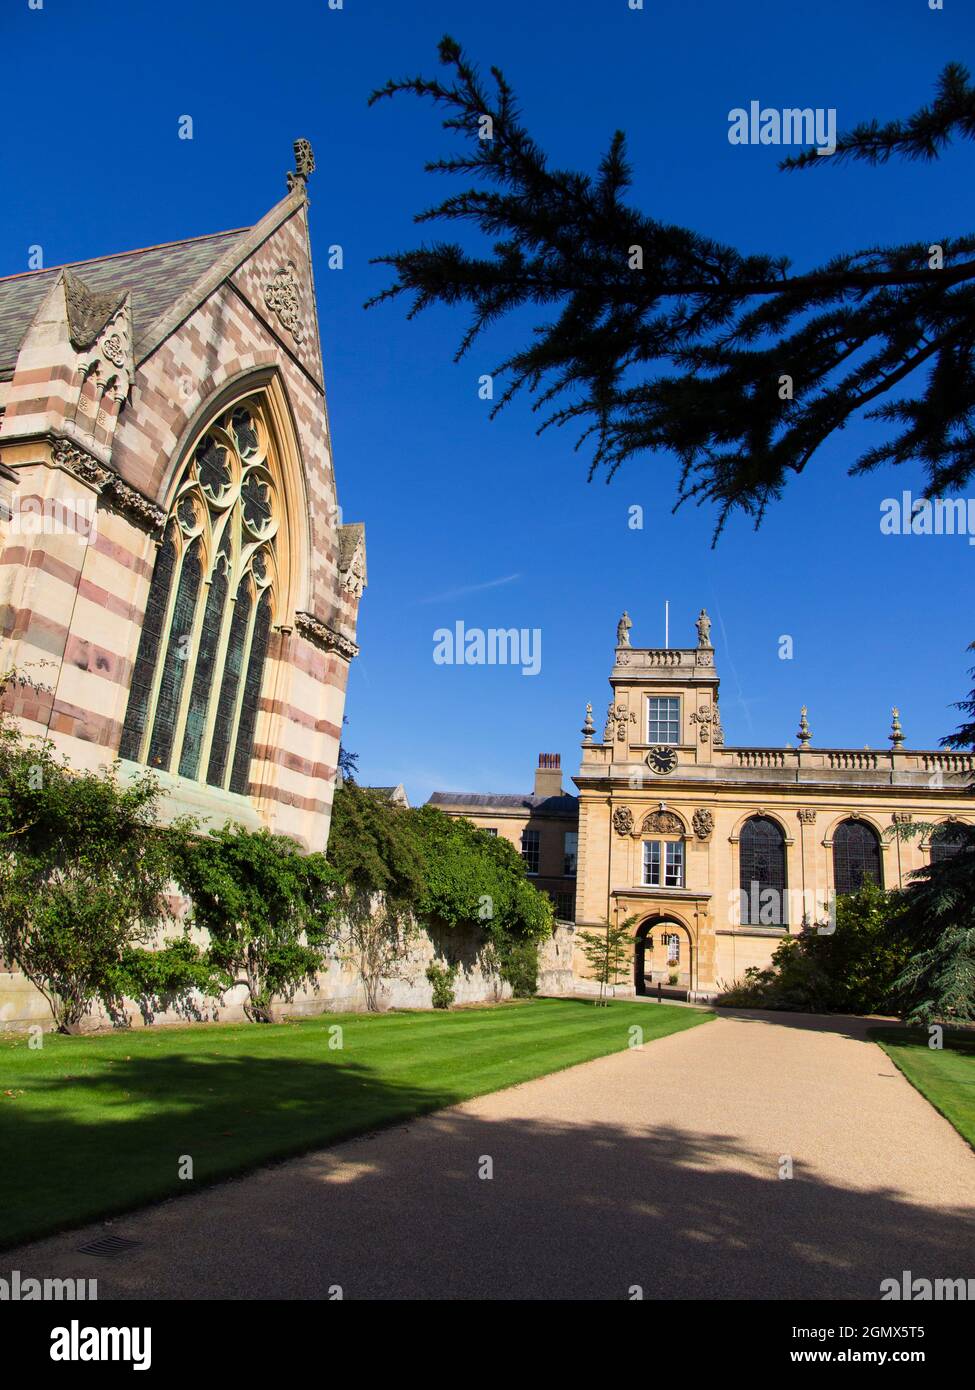 Oxford, Inghilterra - 20 settembre 2013; nessuna gente in vista. La facciata anteriore e la cappella del Trinity College, Oxford. Questo college relativamente grande e ricco Foto Stock